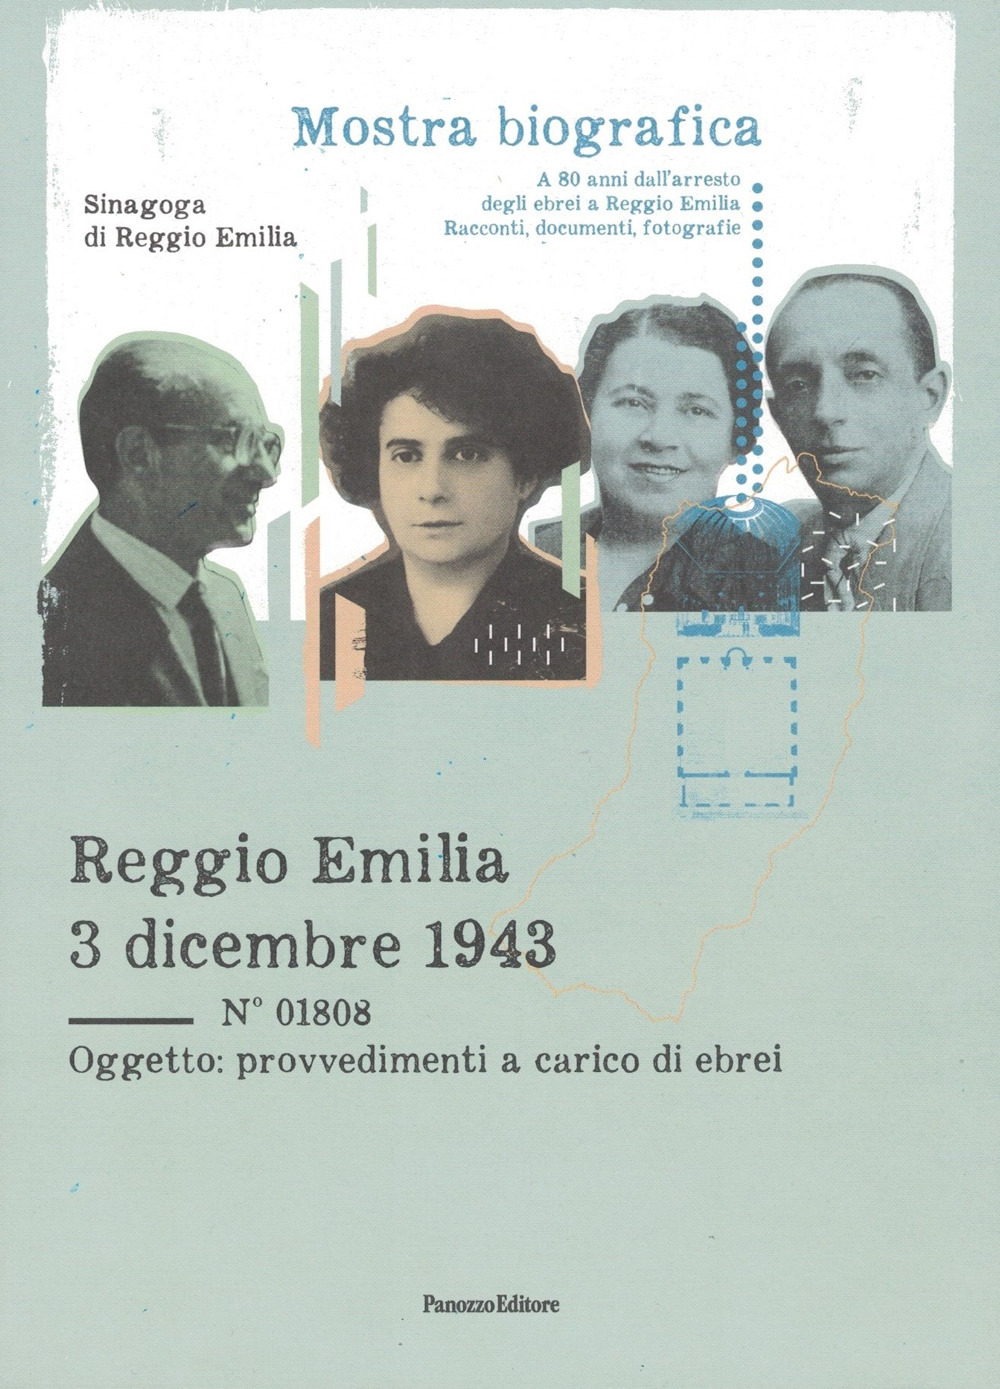 Reggio Emilia 3 dicembre 1943. Mostra bibliografica a ottant'anni dall'arresto degli ebrei a Reggio Emilia. Racconti, documenti, fotografie